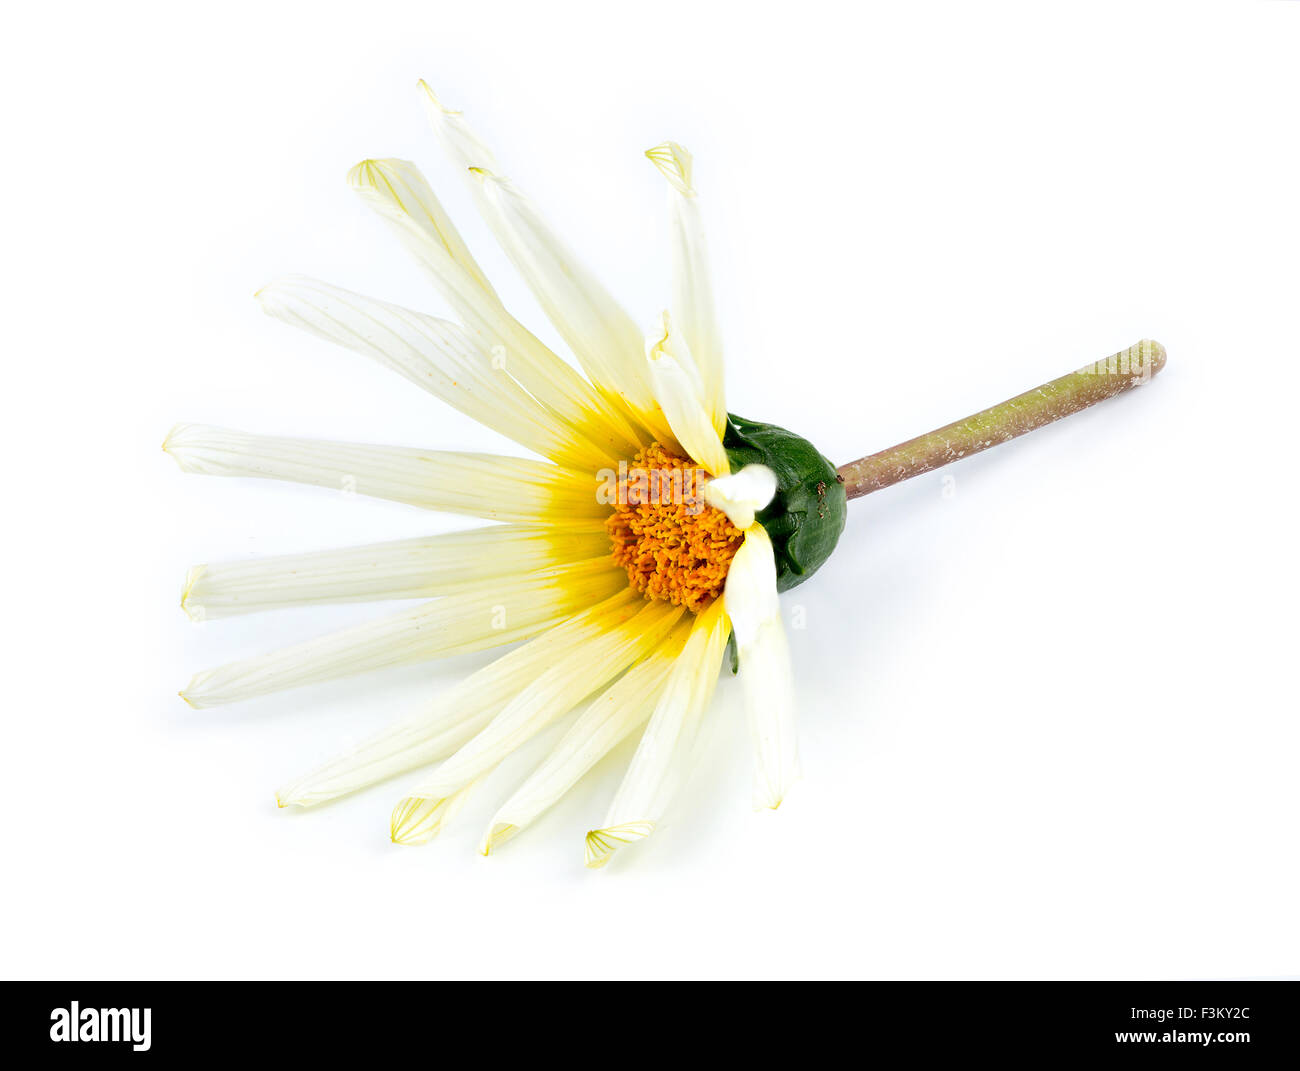 Arancione, bianco, giallo e verde Asteraceae daisy flower contro uno sfondo bianco Foto Stock